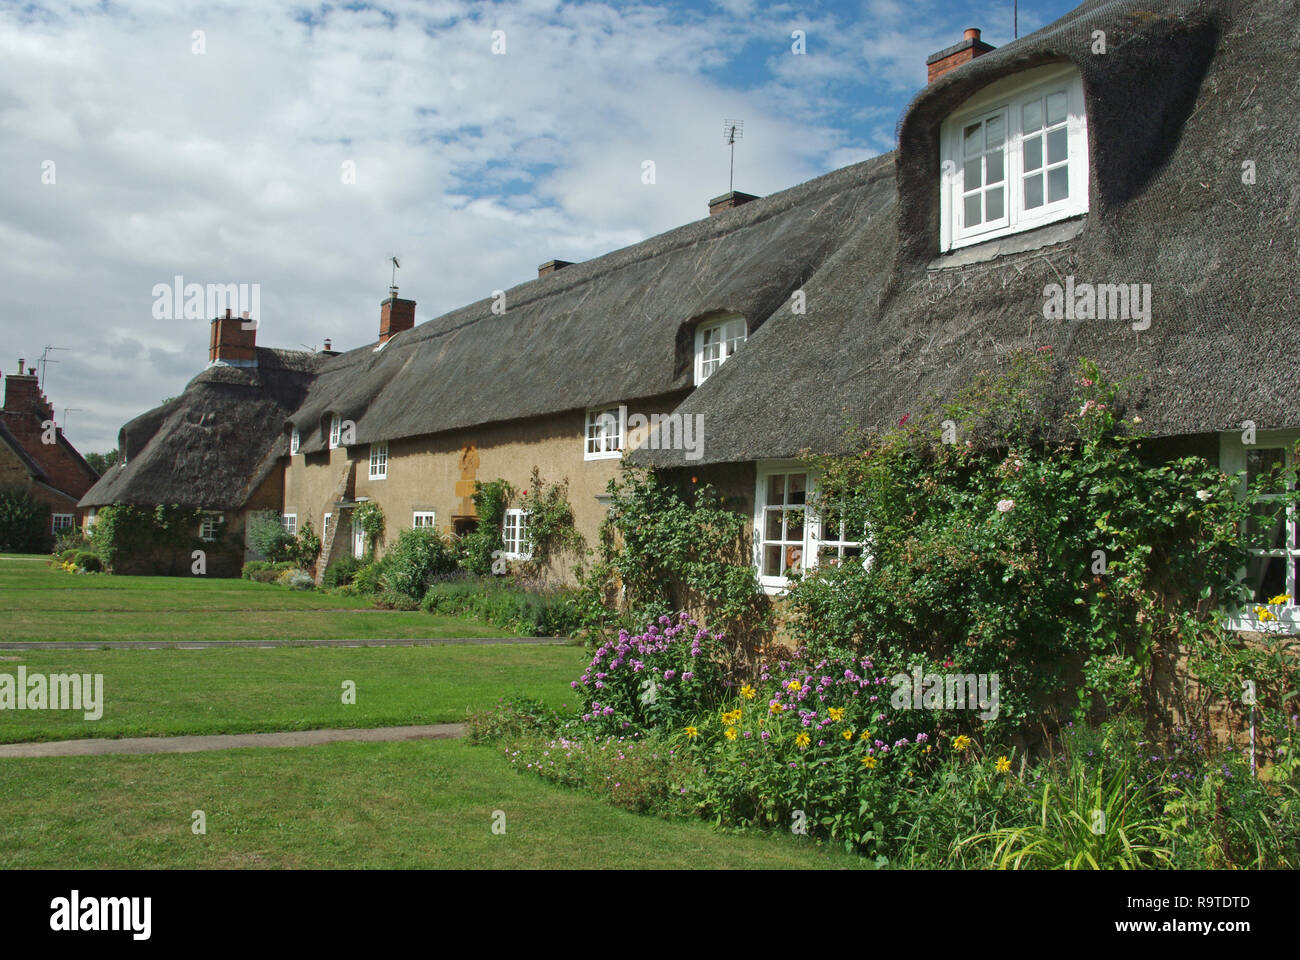 Una pittoresca terrazza del cottage con il tetto di paglia nel villaggio di Ashby St partitari, Northamptonshire, Regno Unito; costruita nei primi anni del XX secolo da Sir Edwin Lutyens. Foto Stock